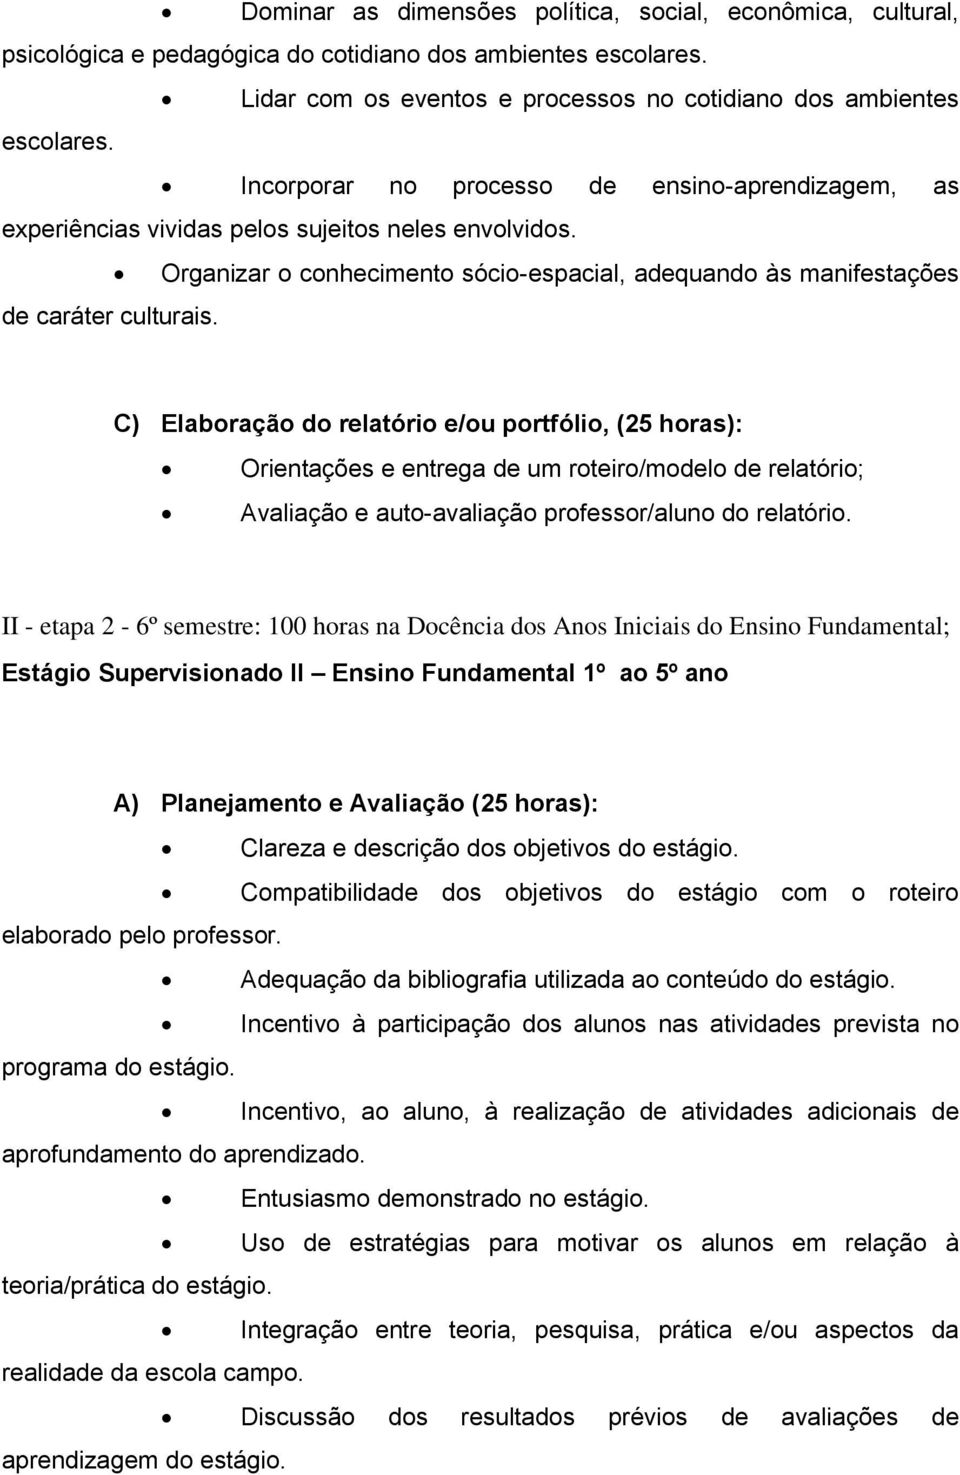 C) Elaboração do relatório e/ou portfólio, (25 horas): Orientações e entrega de um roteiro/modelo de relatório; Avaliação e auto-avaliação professor/aluno do relatório.